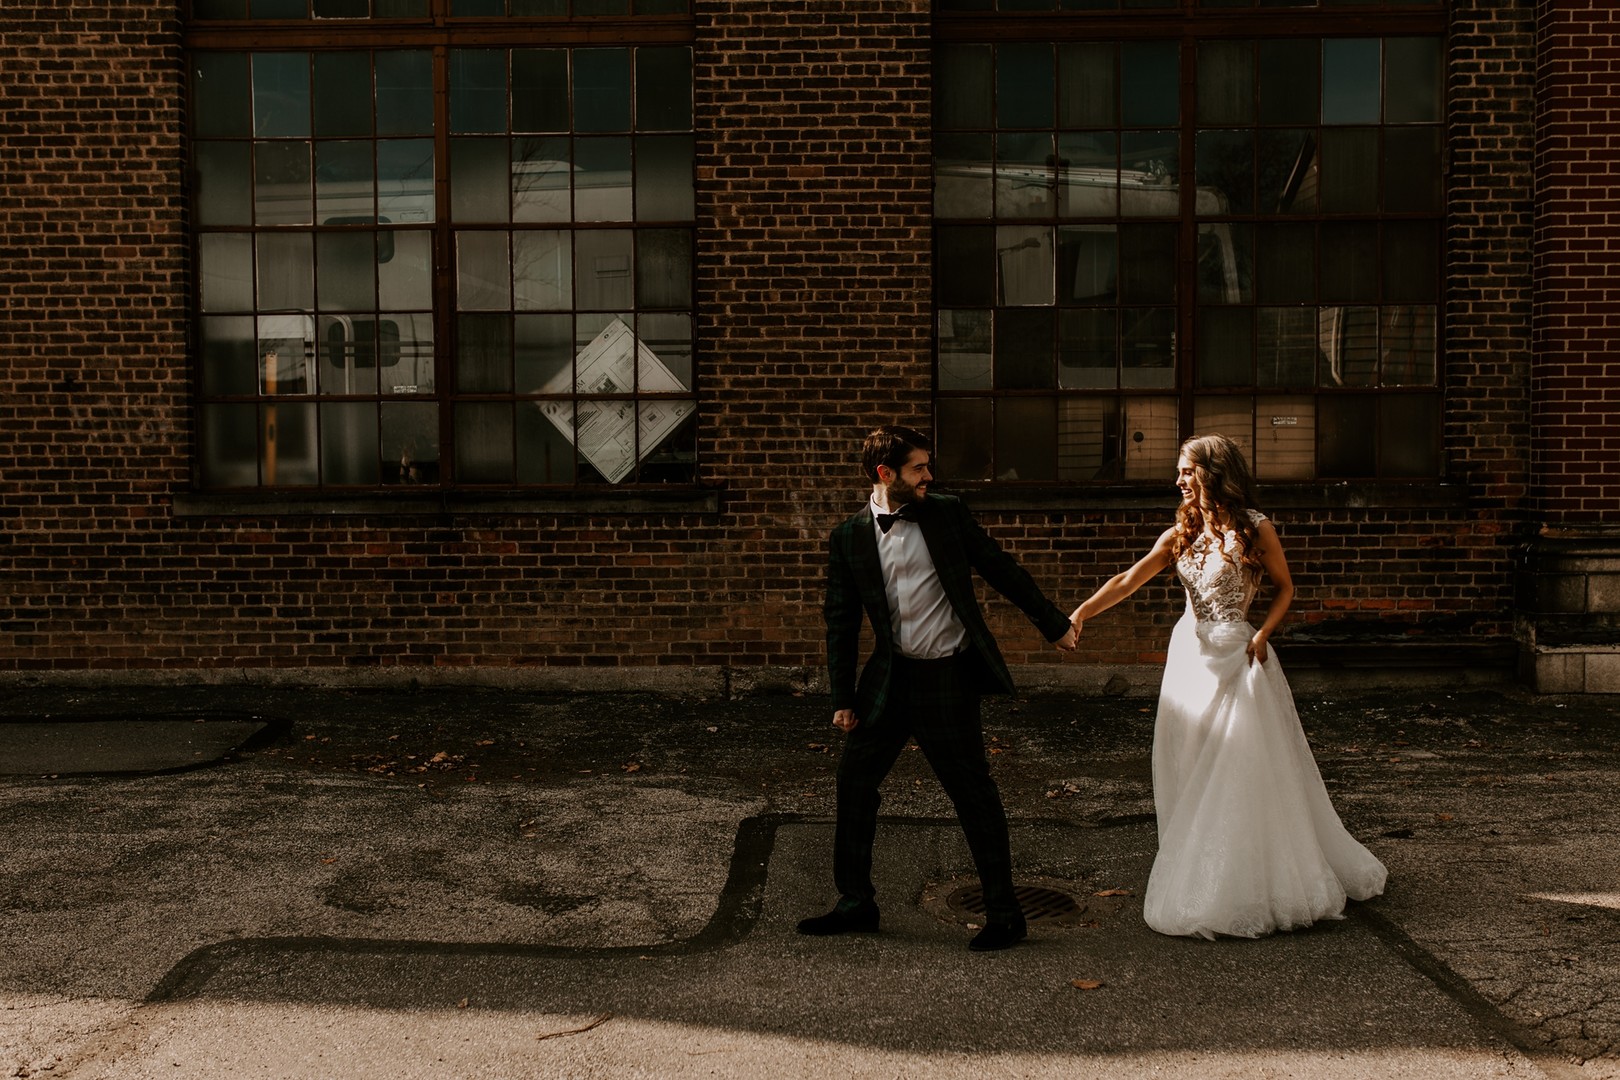 Rooftop Wedding, Cleveland OH Wedding, Boho Wedding Decor Ideas, Cleveland Ohio wedding photographers